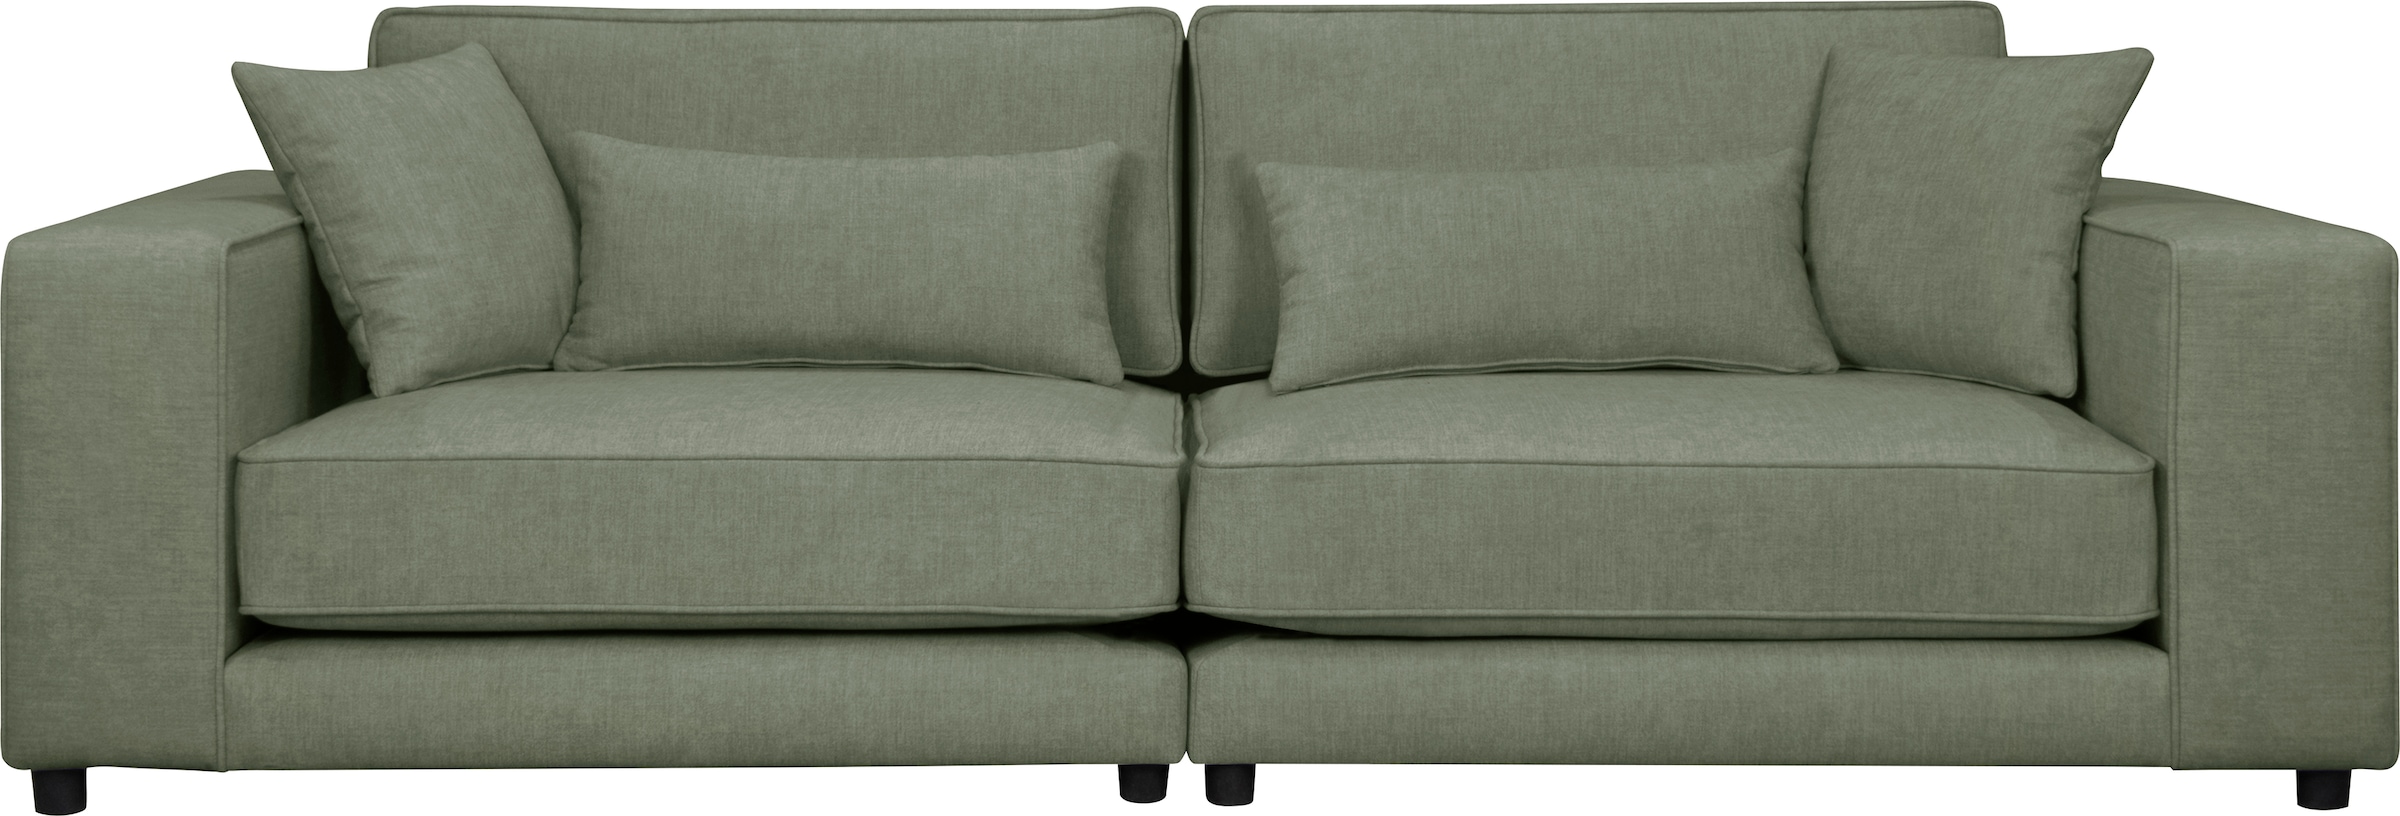 3-Sitzer »Grenette«, Modulsofa, im Baumwoll-/Leinenmix oder aus recycelten Stoffen